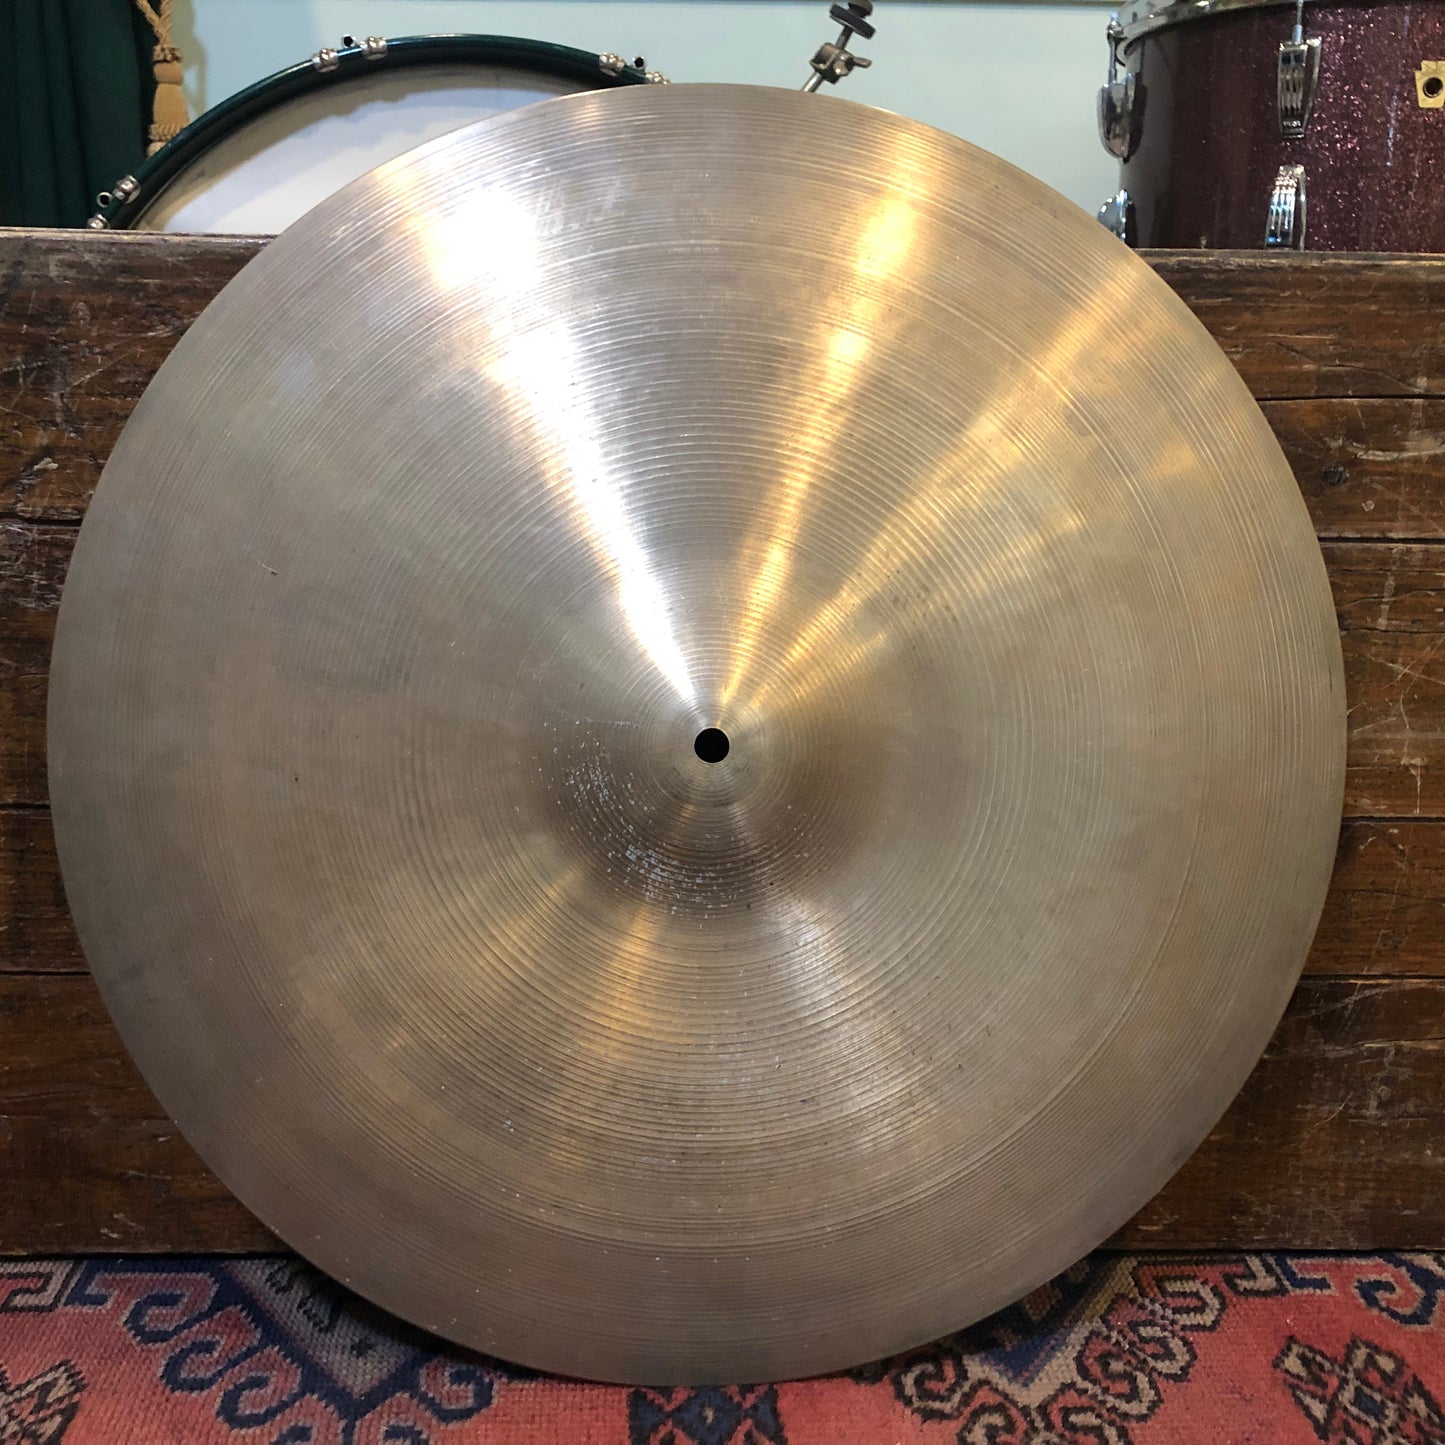 20" Zildjian A 1970s Ride Cymbal 2554g #785